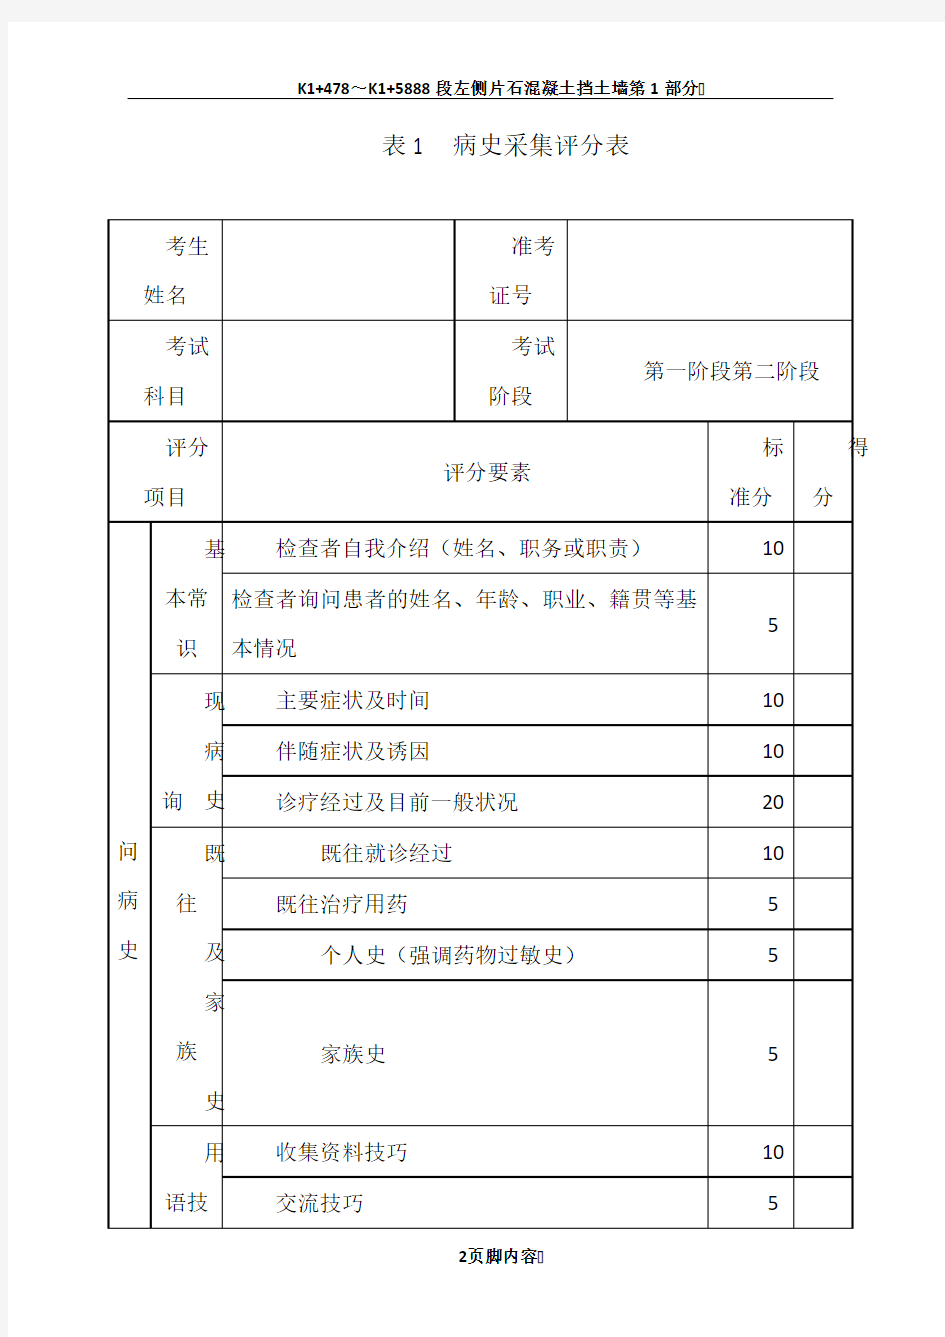 2、江苏省中医住院医师规范化培训临床实践技能考核评分表